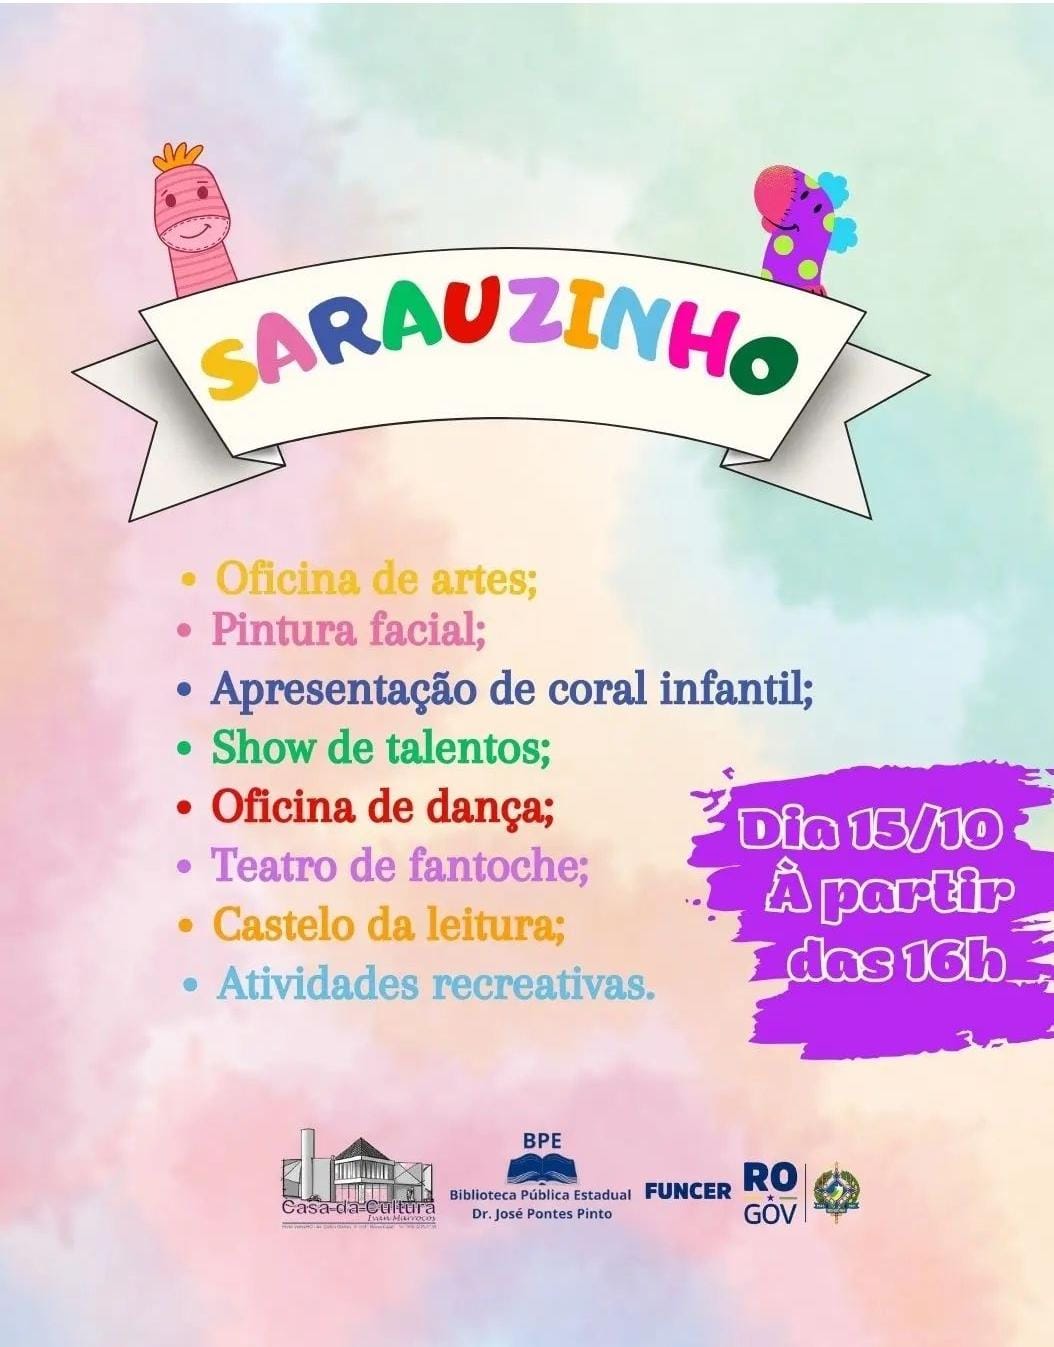 Agenda News: Sarauzinho em comemoração ao Dia das Crianças, 